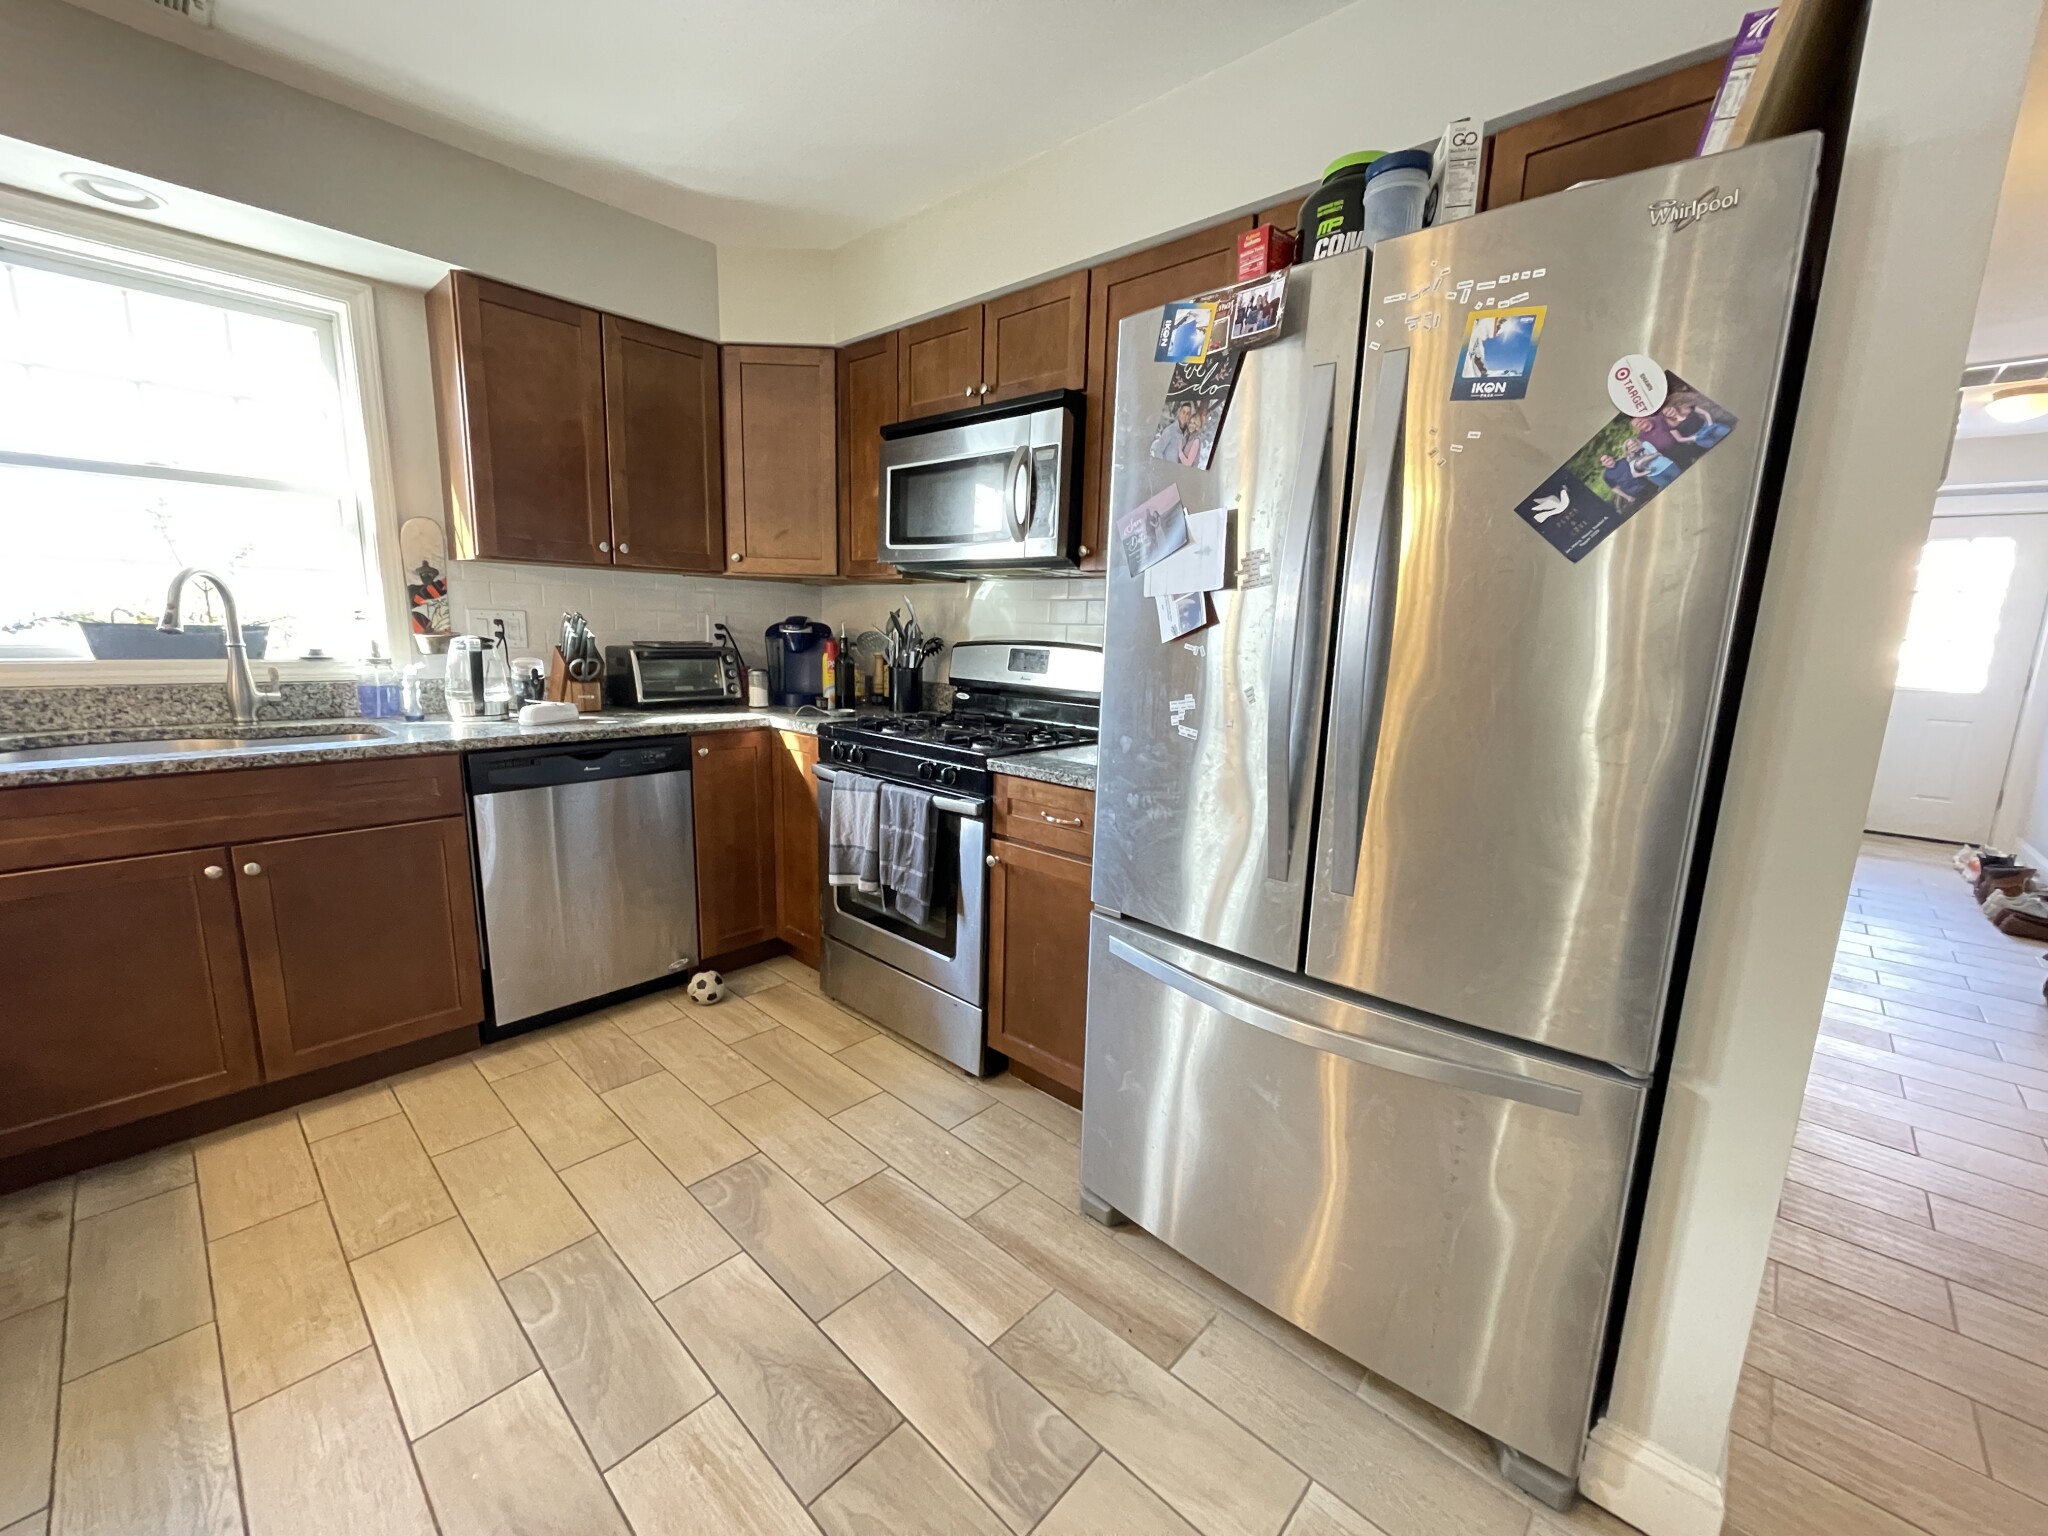 Photos of apartment on Mount Vernon St.,Boston MA 02135